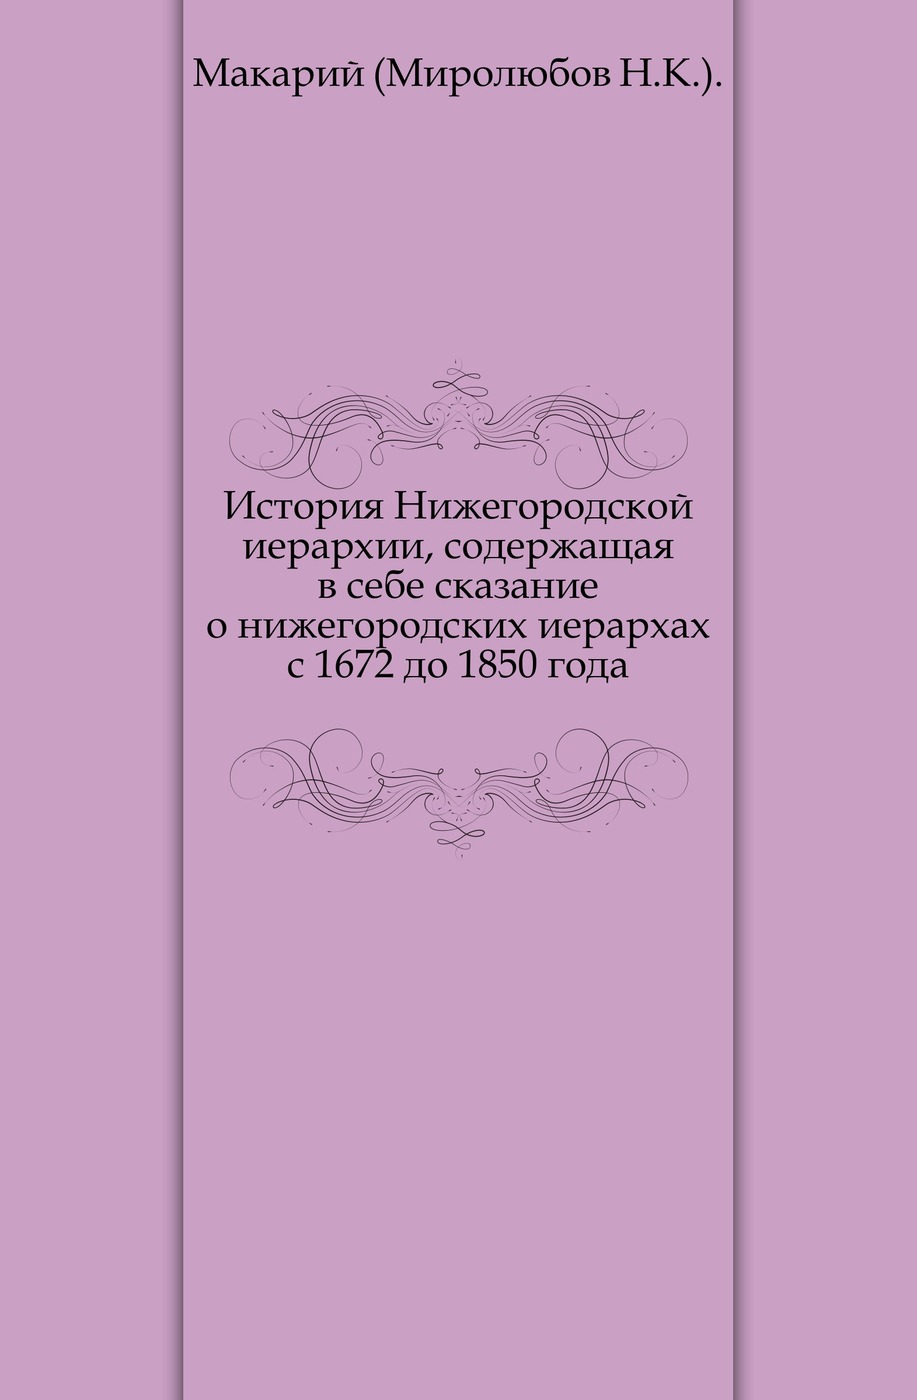 История Нижегородской иерархии, содержащая в себе сказание о нижегородских иерархах с 1672 до 1850 года